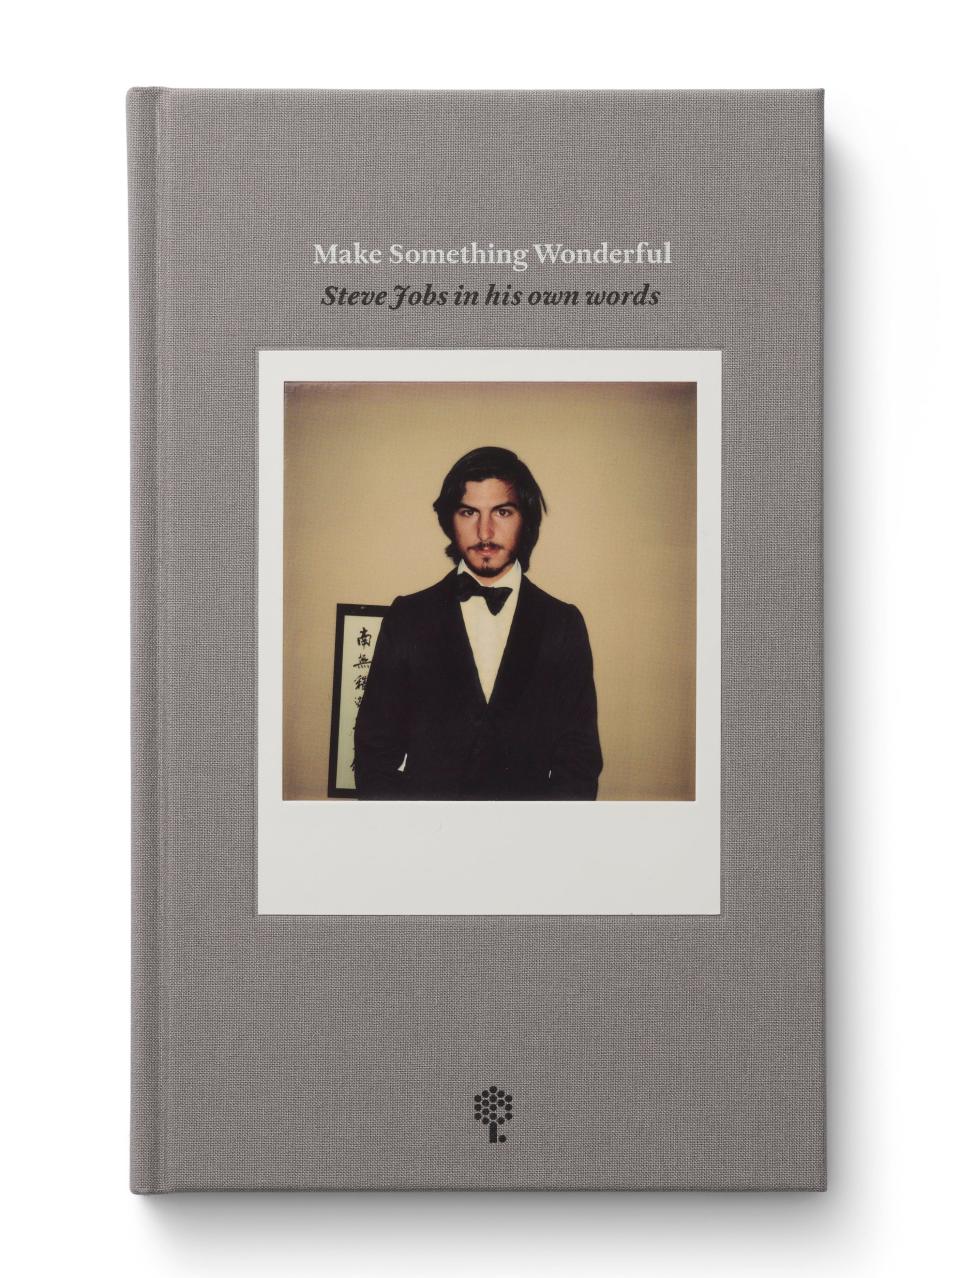 "Make Something Wonderful: Steve Jobs in his own words"